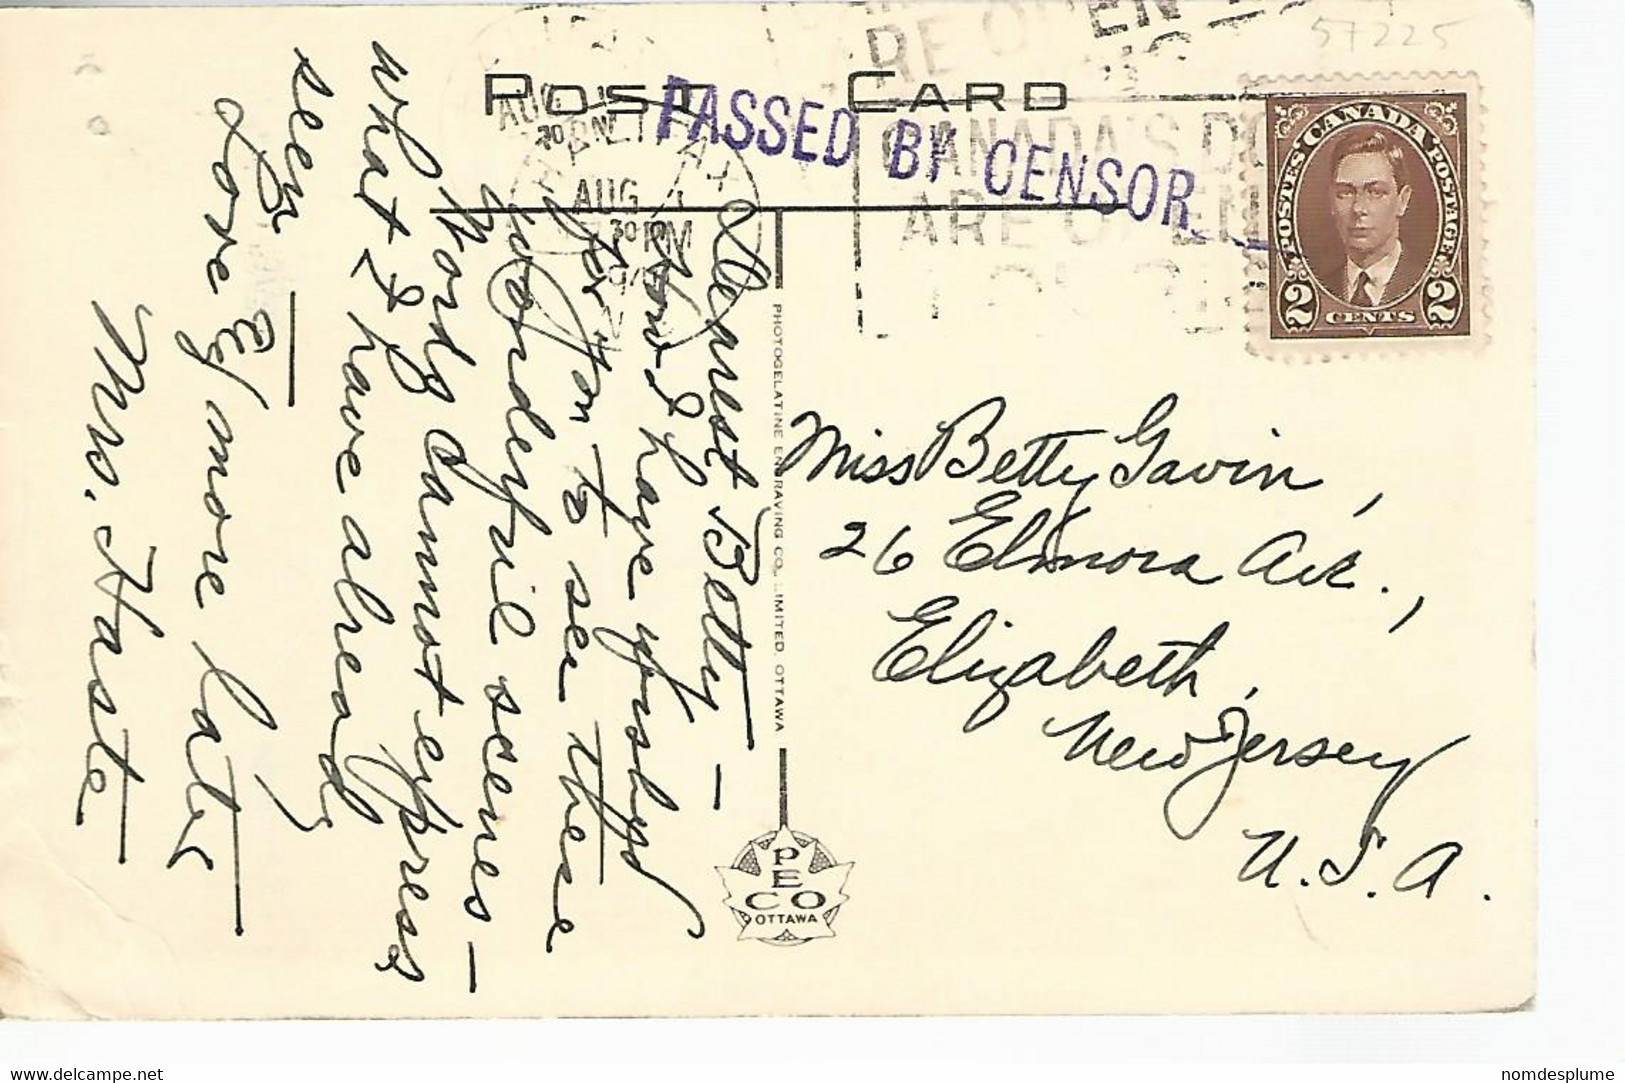 57225) Canada Peggy's Cove Near Halifax NS Censor Postmark Cancel 1940 - Halifax